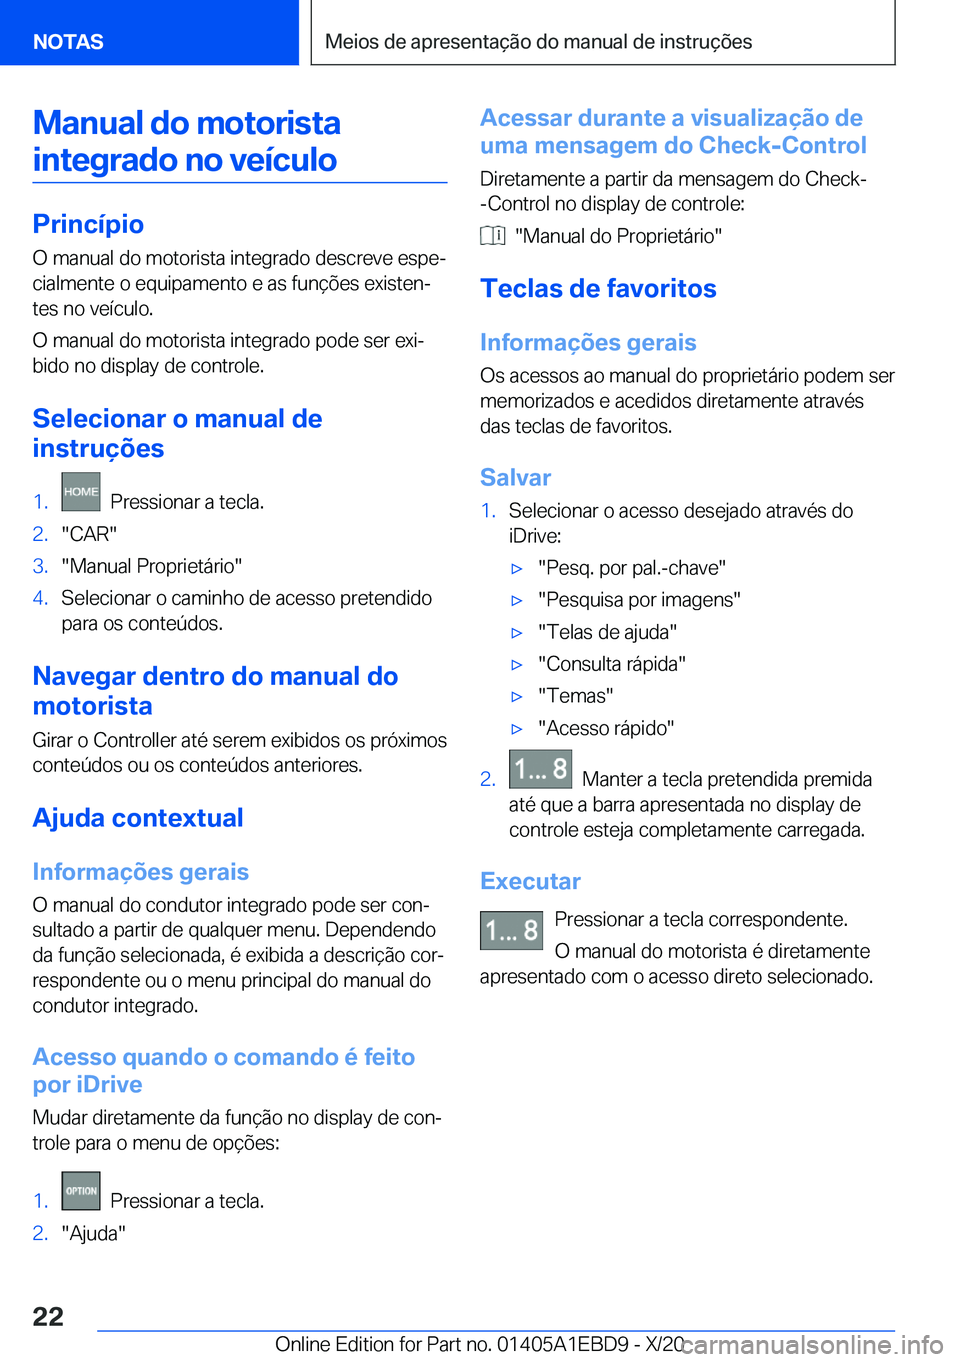 BMW 3 SERIES 2021  Manual do condutor (in Portuguese) �M�a�n�u�a�l��d�o��m�o�t�o�r�i�s�t�a�i�n�t�e�g�r�a�d�o��n�o��v�e�